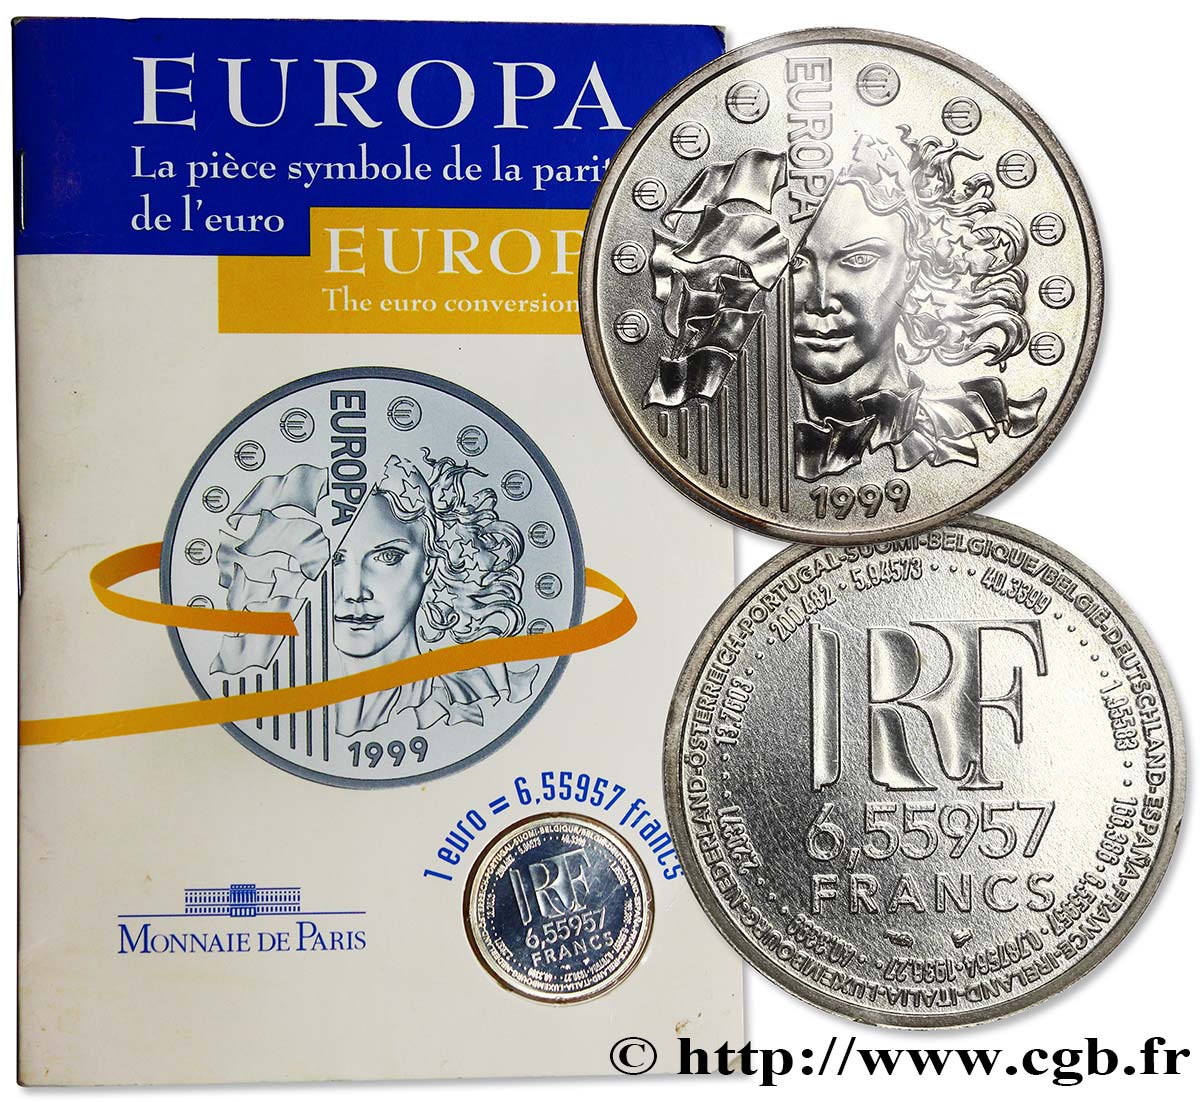 Brillant Universel 6,55957 francs - La parité 1999  F.1250 2 FDC68 